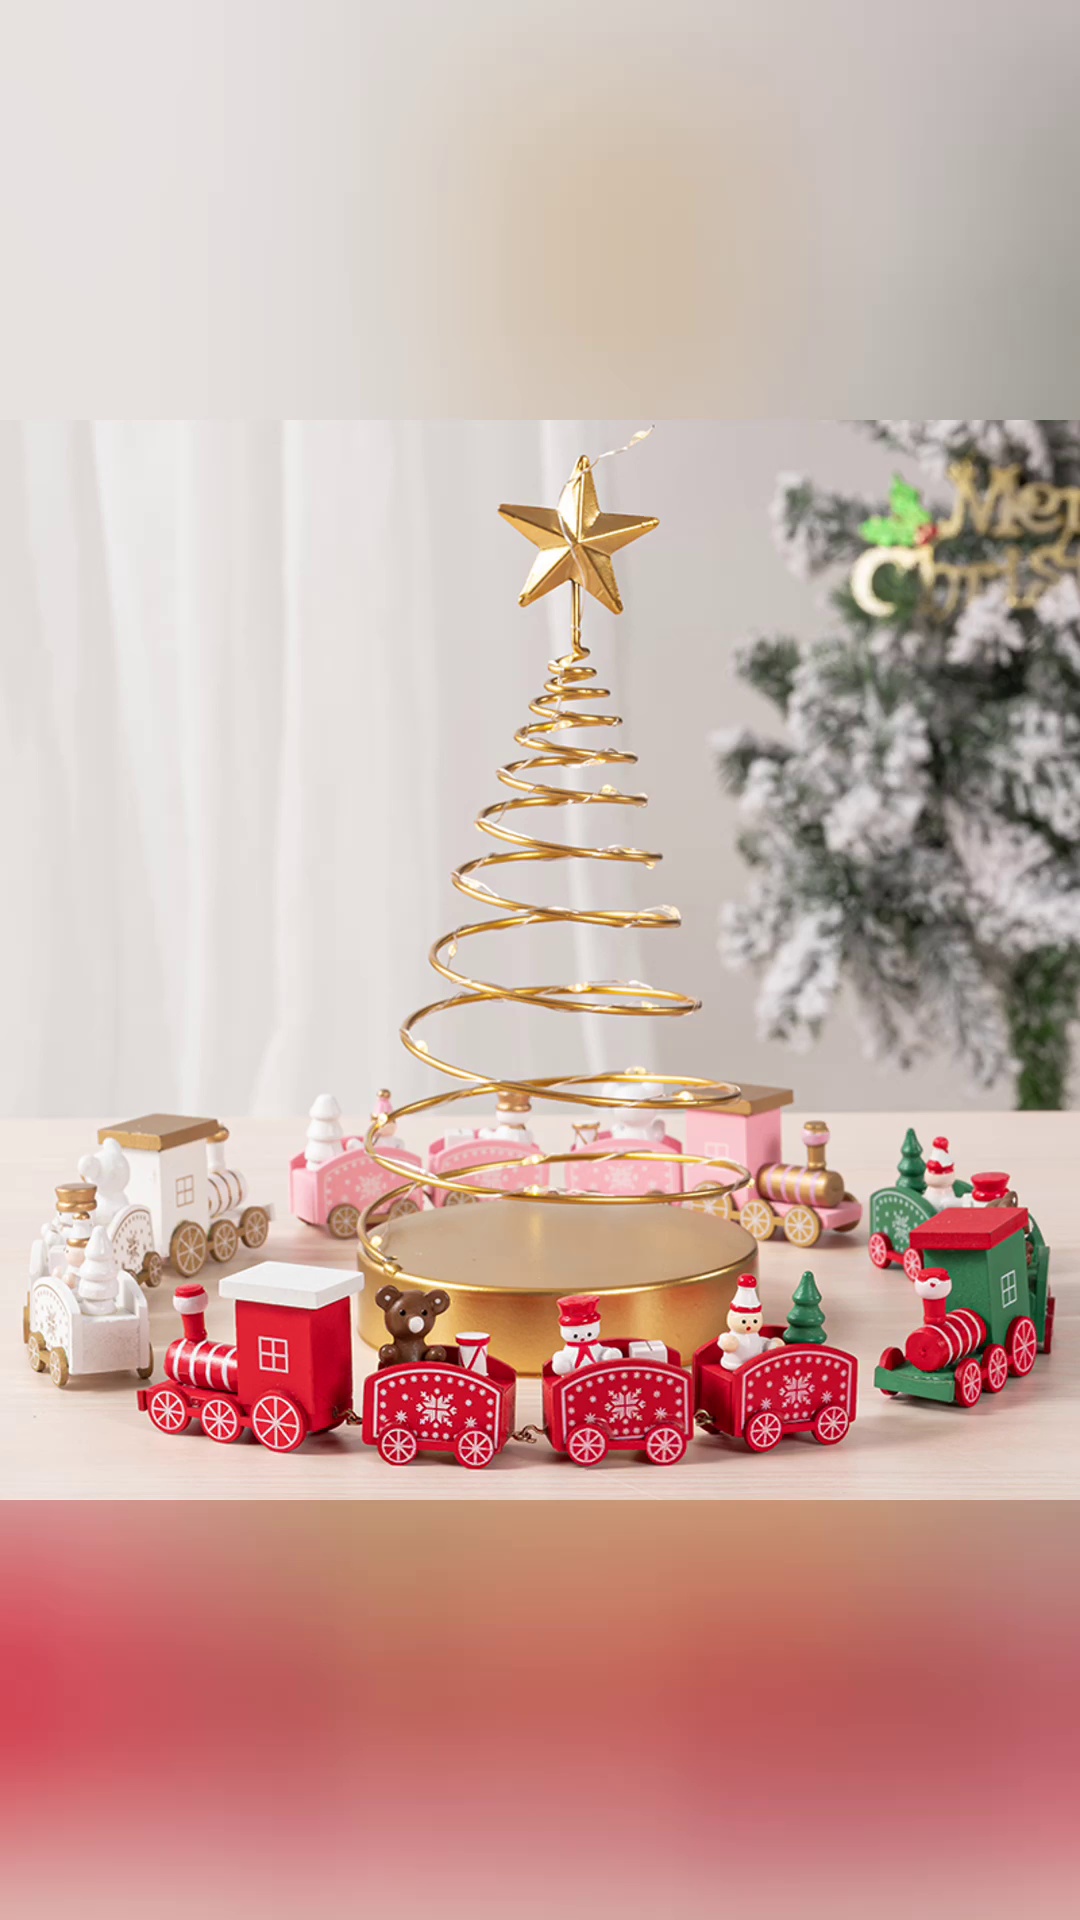 クリスマスデコレーション電車 子供用おもちゃ・ギフト・クリスマスギフト・女性への贈り物 おもちゃ 7sGood通販 株式会社HHO